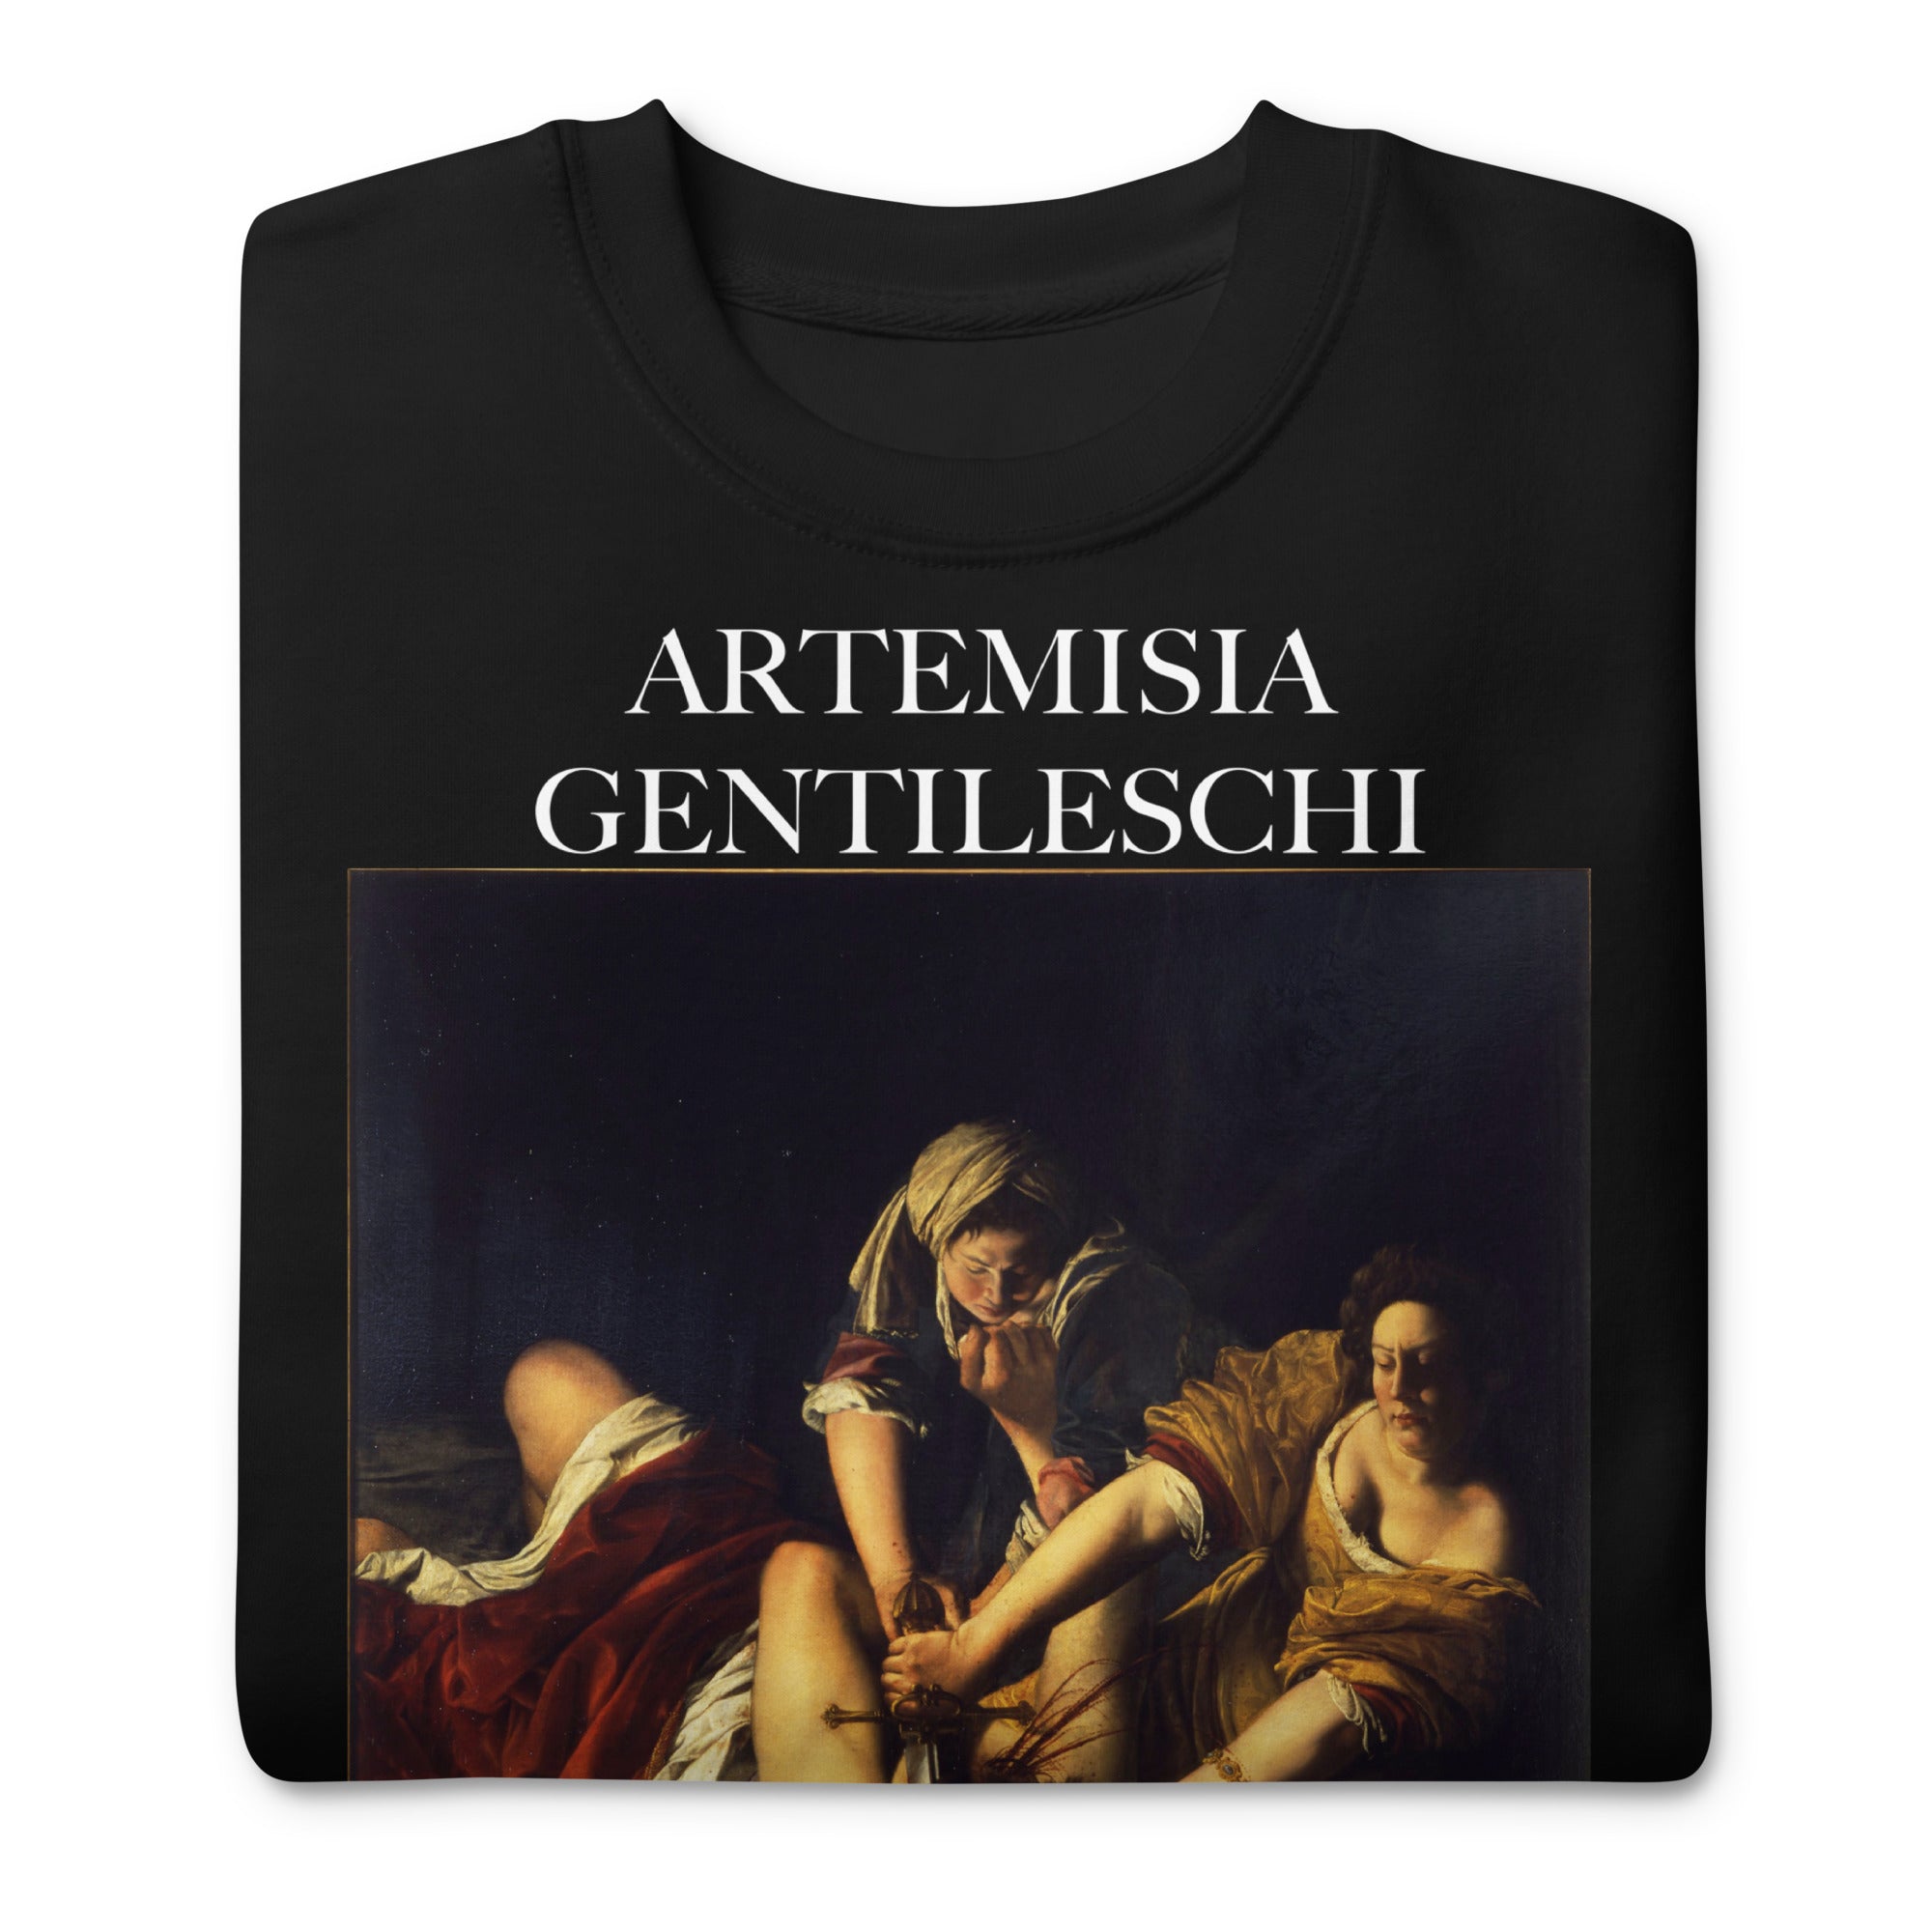 Sweatshirt mit berühmtem Gemälde „Judith erschlägt Holofernes“ von Artemisia Gentileschi | Premium-Unisex-Sweatshirt